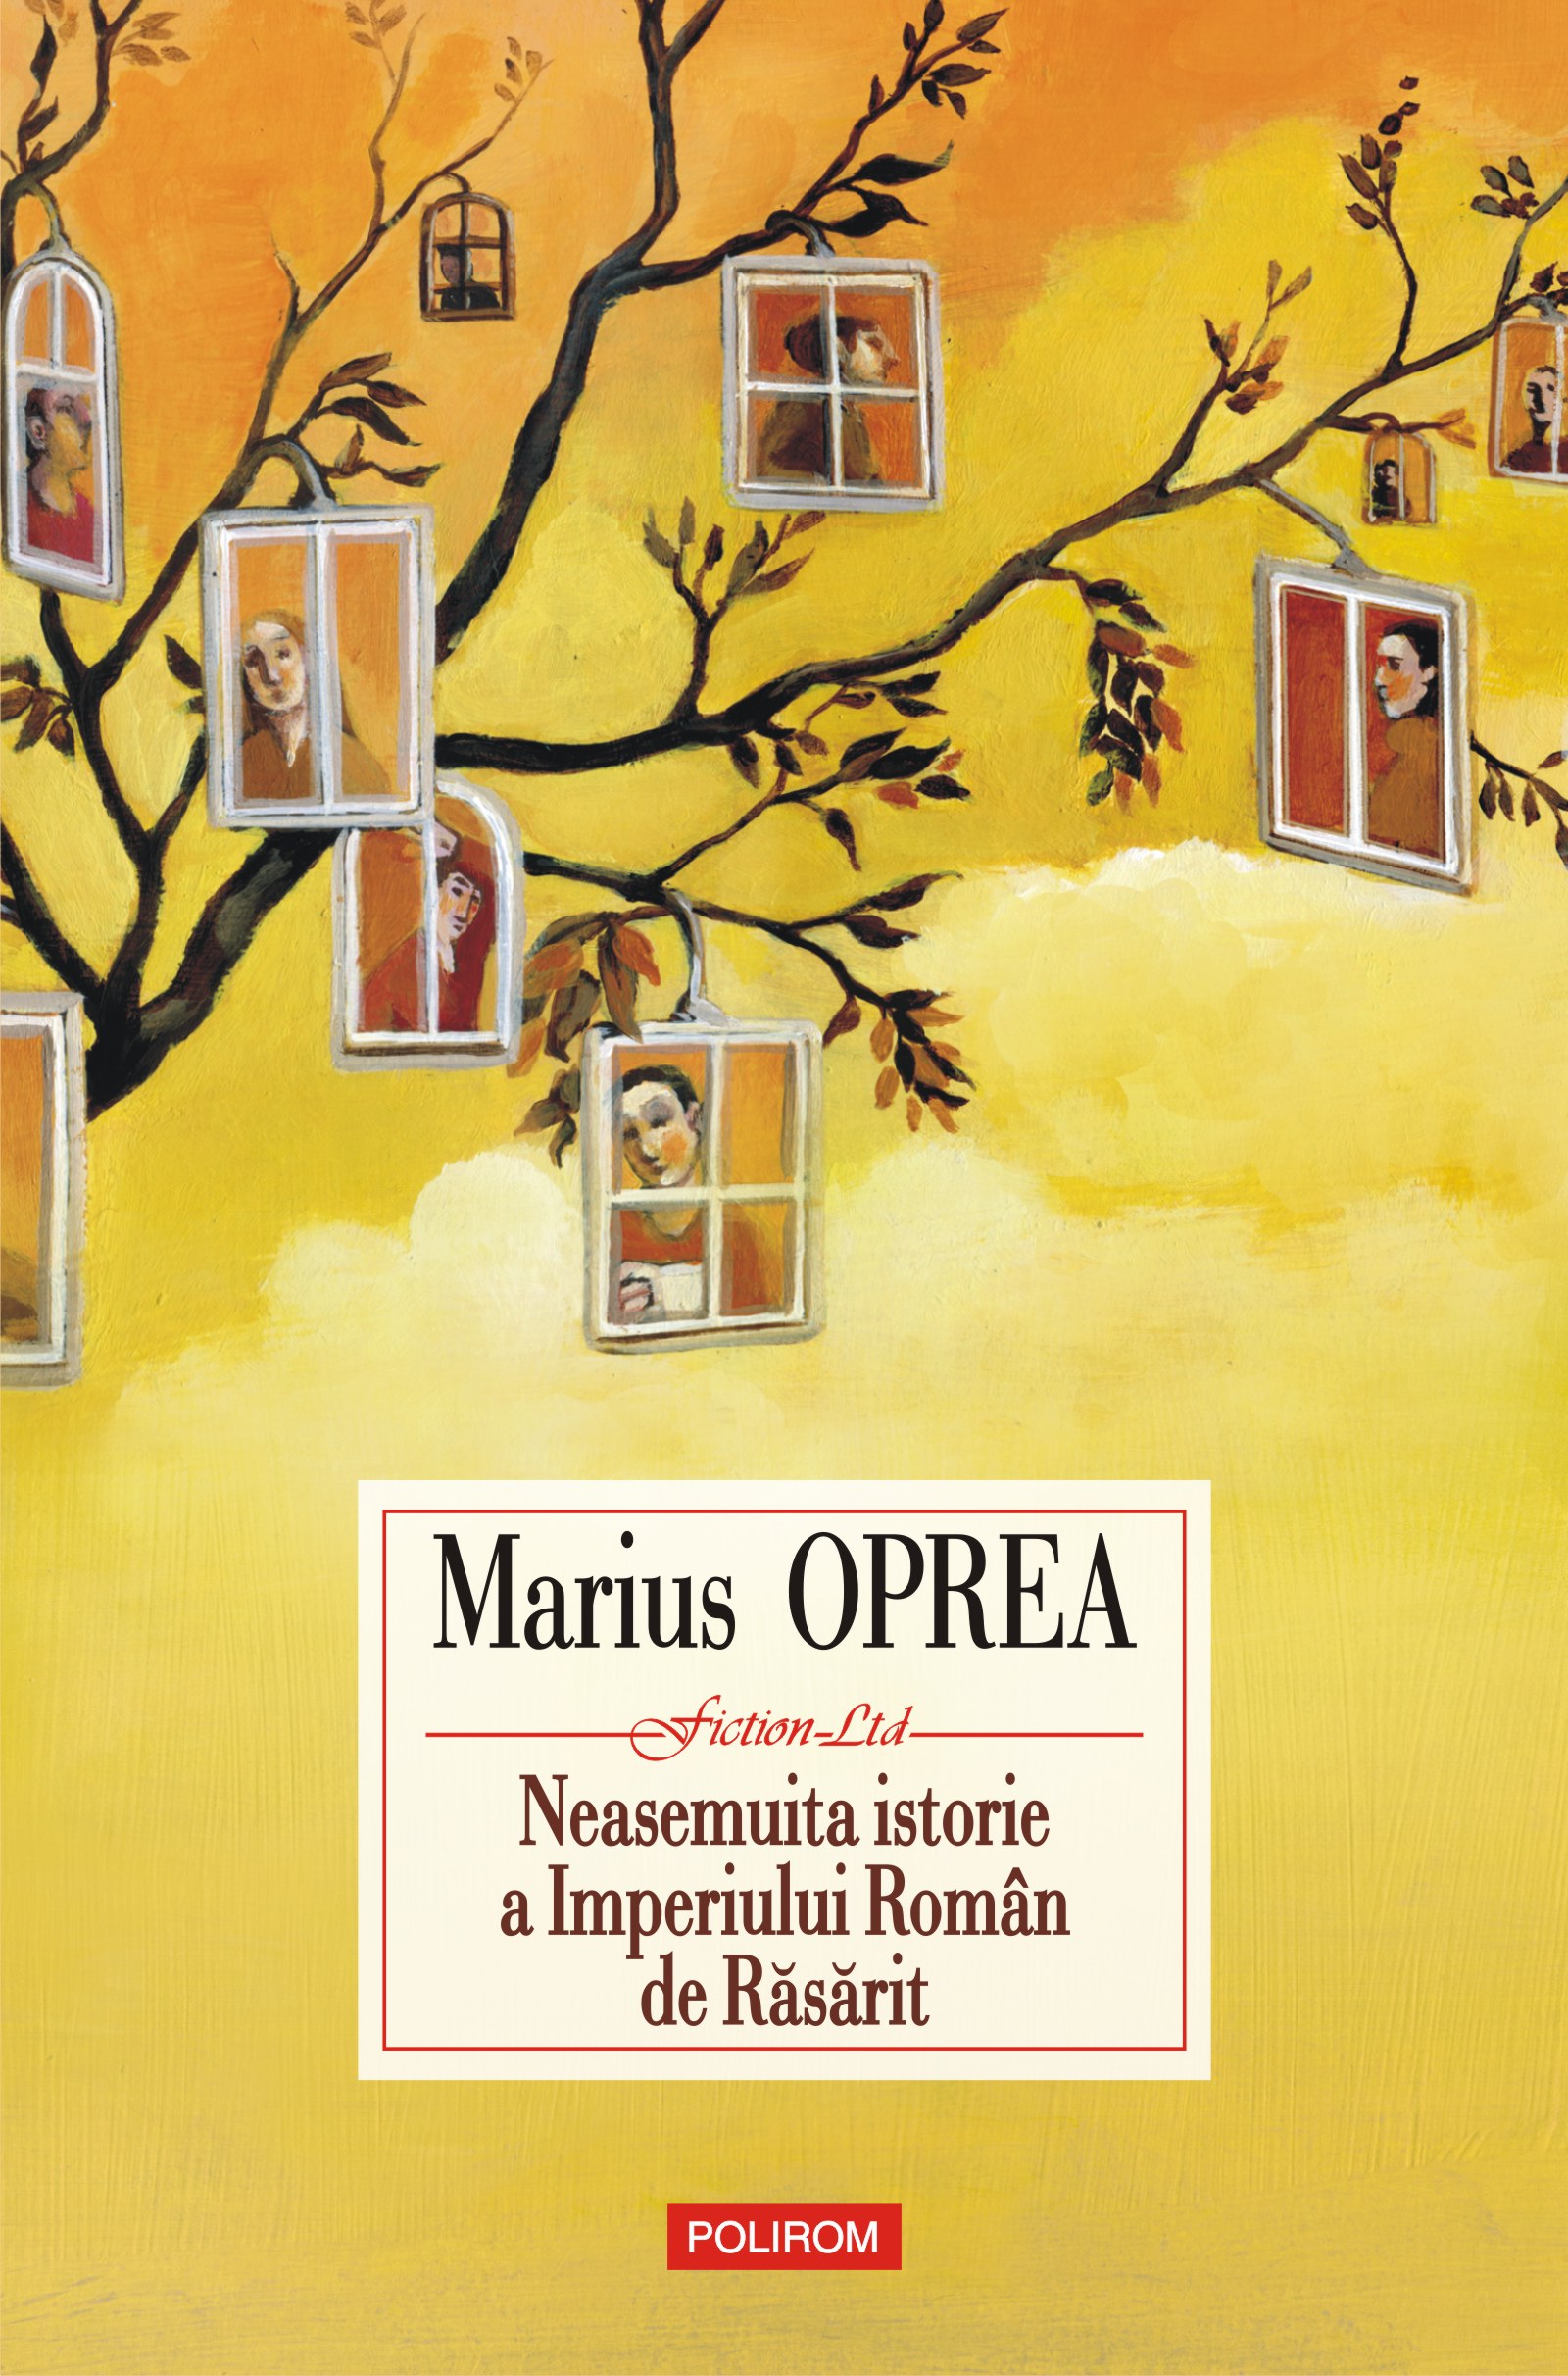 eBook Neasemuita istorie a Imperiului Roman de Rasarit - Marius Oprea